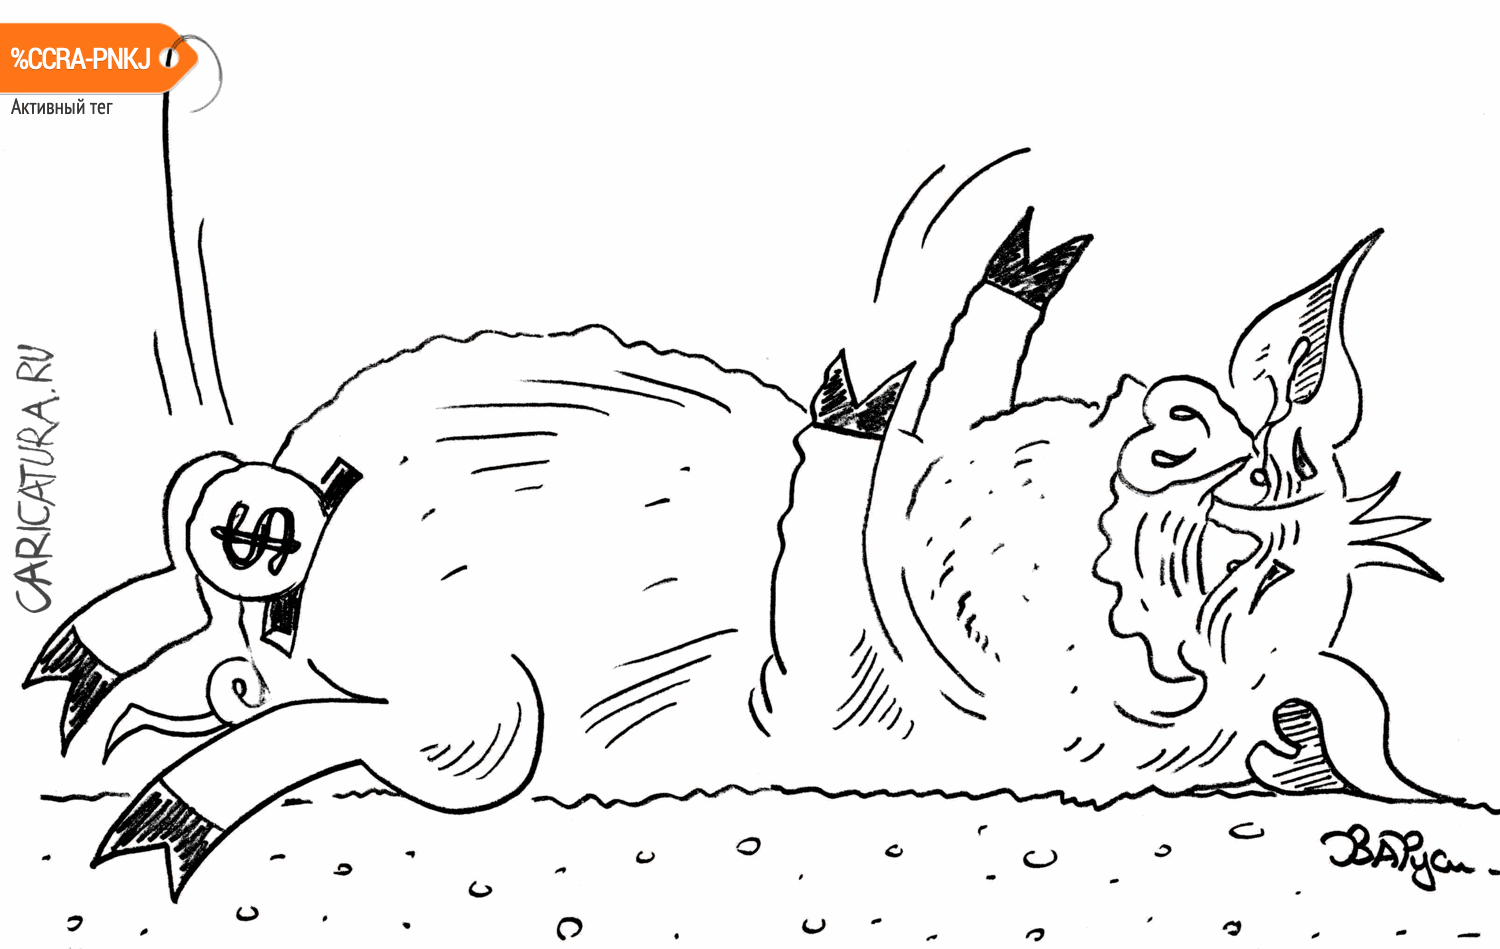 Карикатура "Свинья-копилка", Руслан Валитов